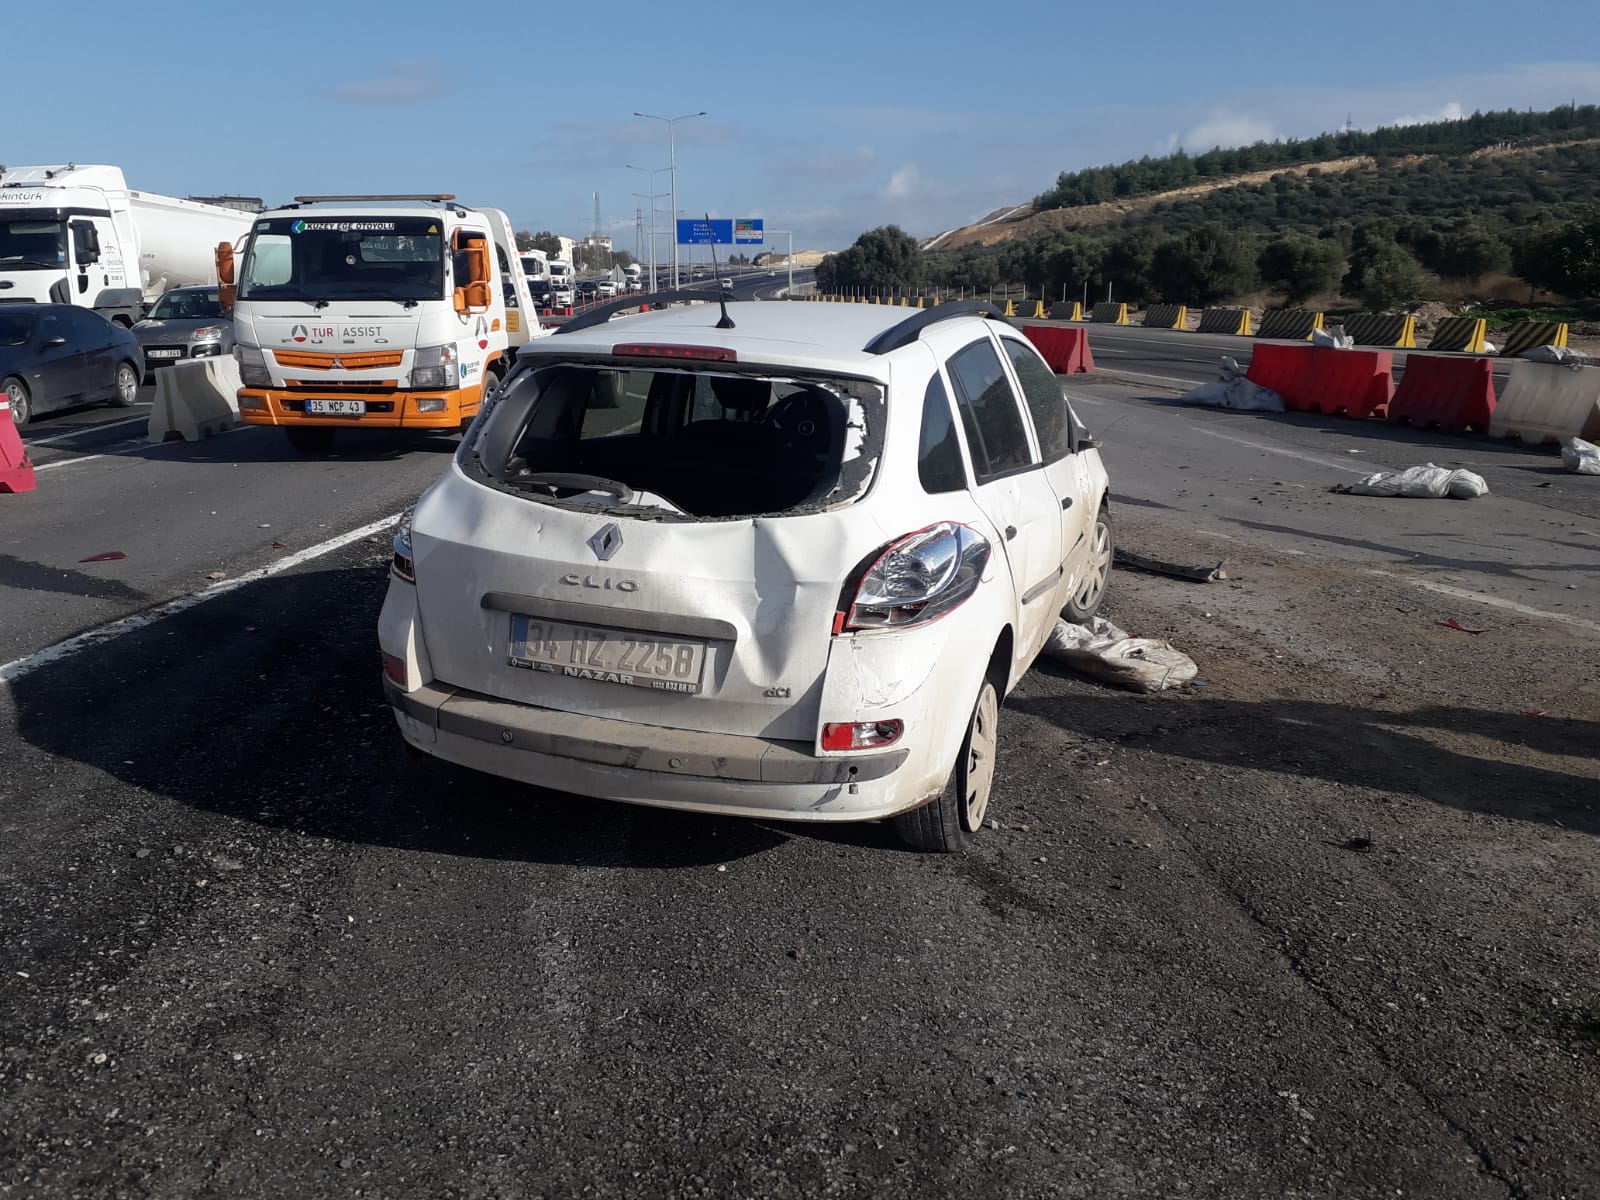 Aliağa' Trafik Kazası:1 yaralı